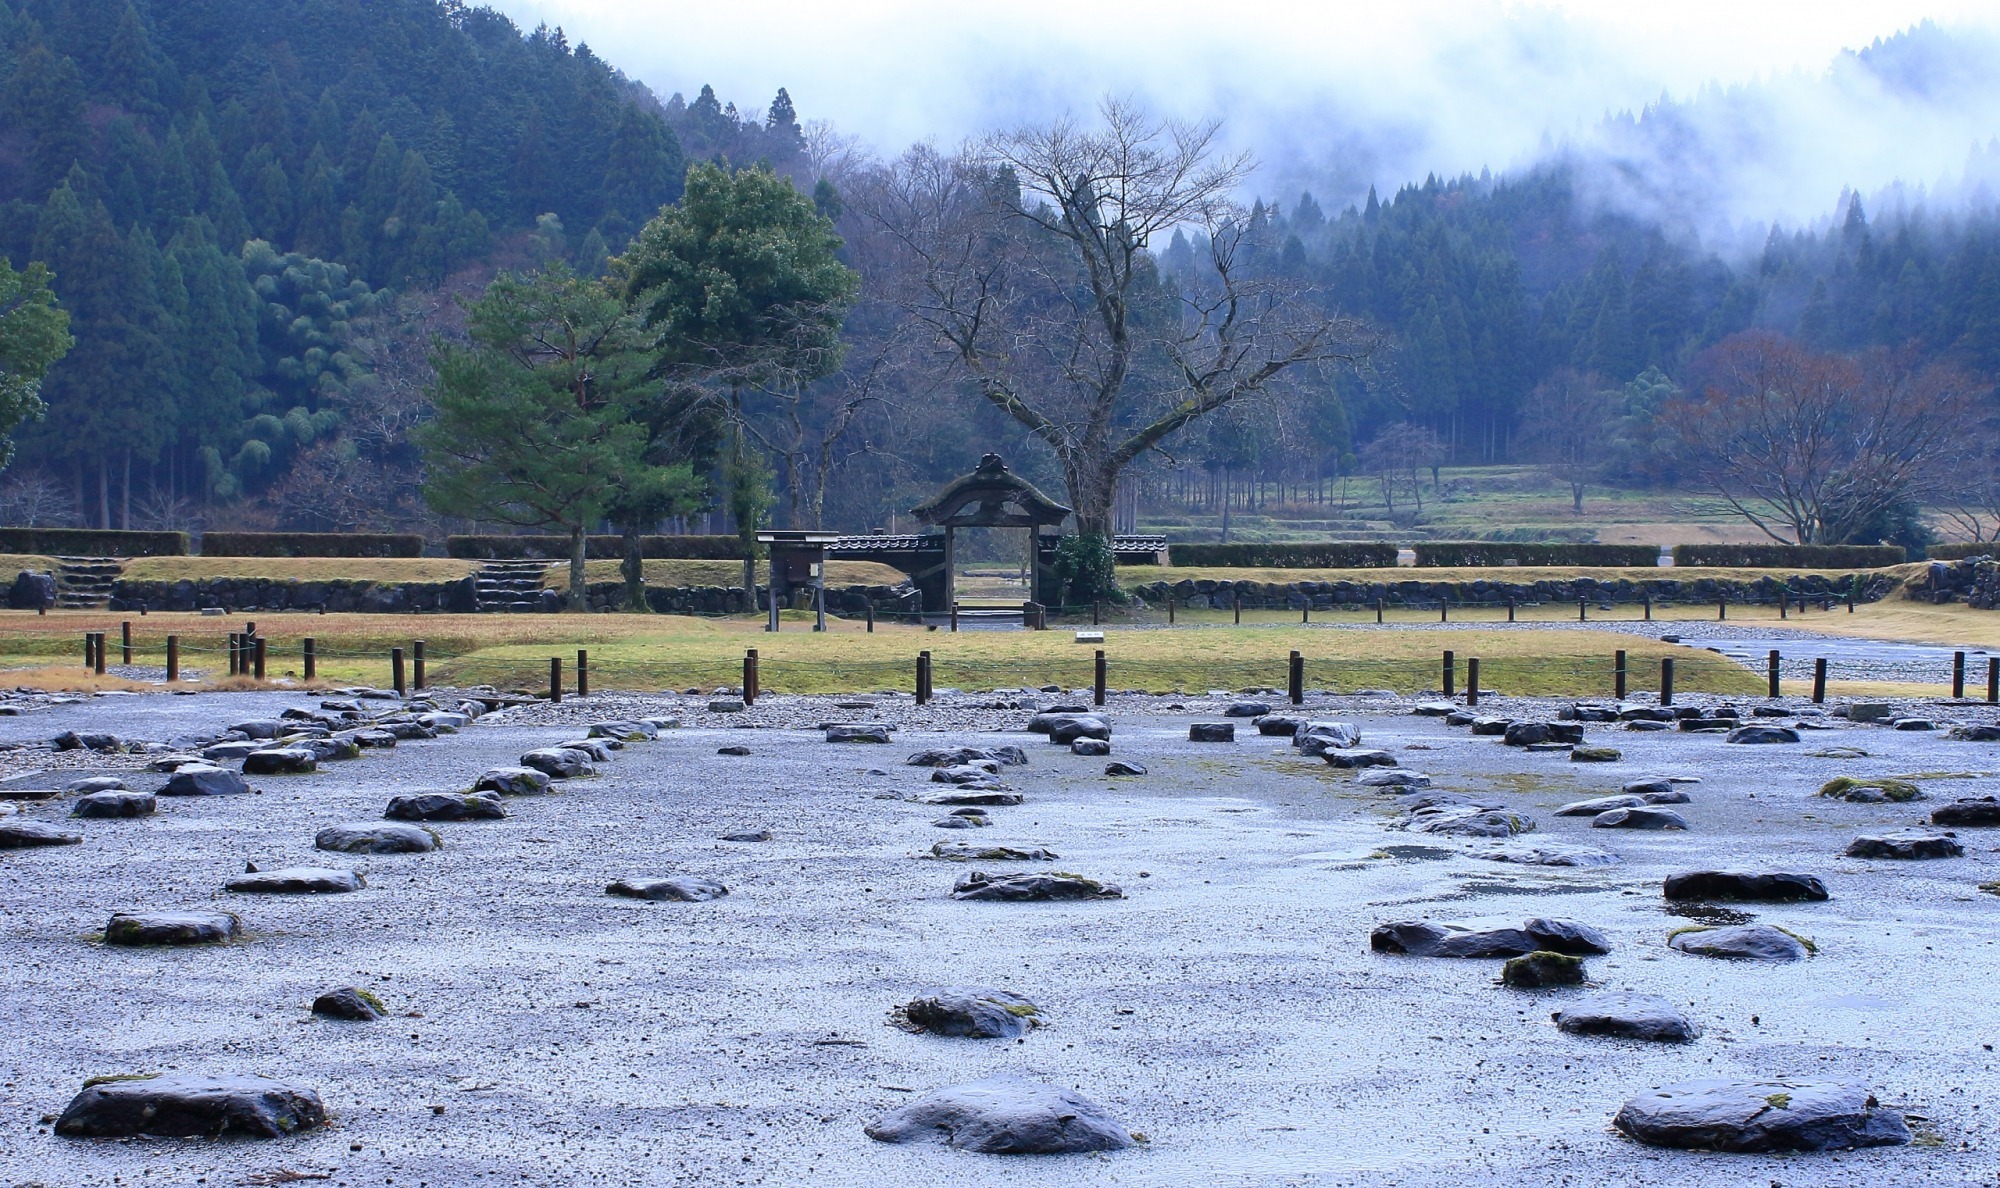 戦国時代の栄枯盛衰を感じる「一乗谷朝倉氏遺跡」とは？350年の眠りから覚めた貴重な遺跡の歴史と見どころをご紹介します。